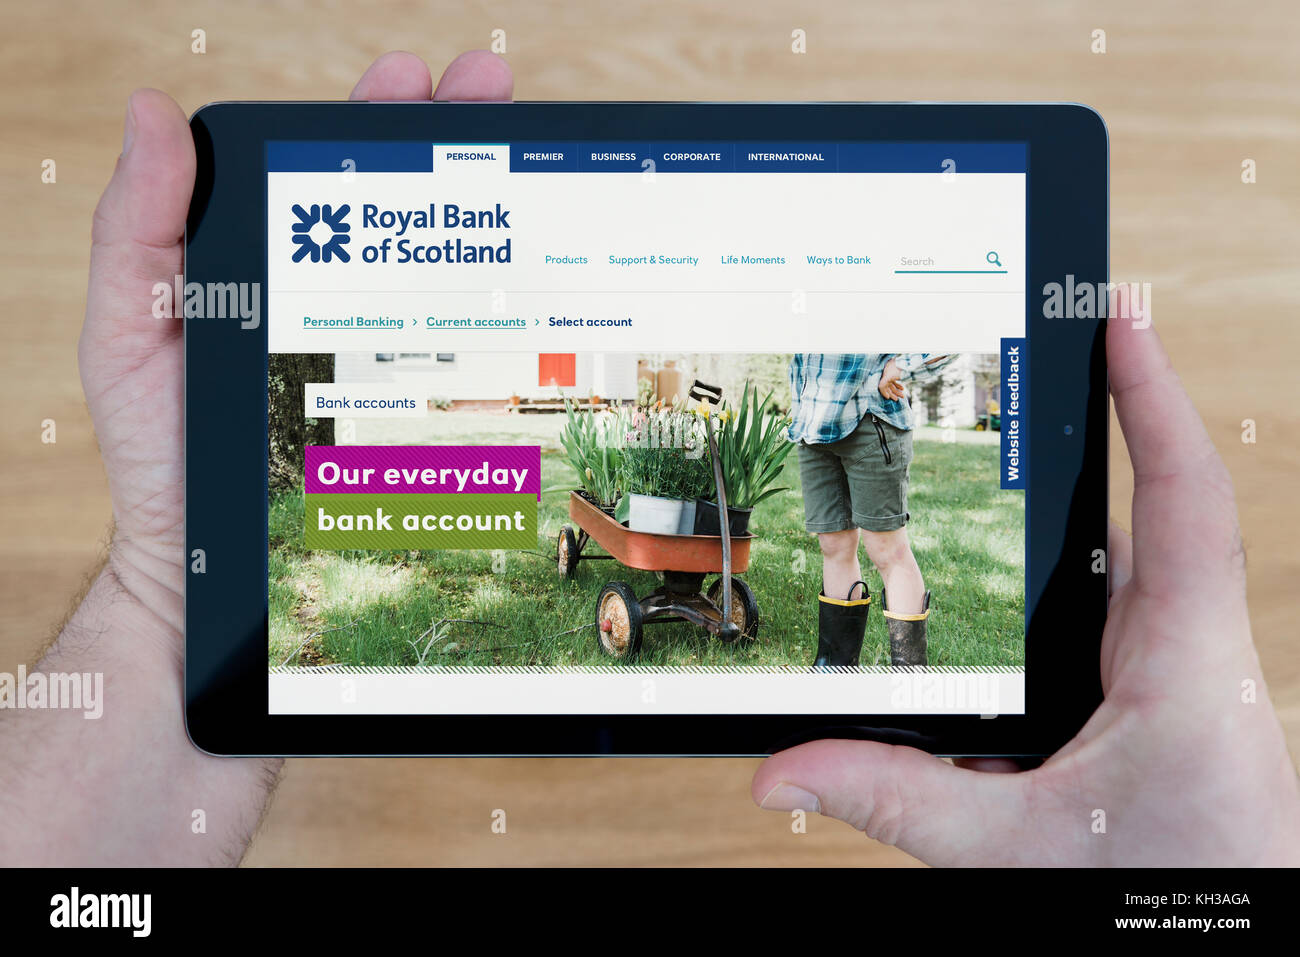 Un homme regarde la banque RBS site sur son iPad tablet device, tourné contre une table en bois page contexte (usage éditorial uniquement) Banque D'Images